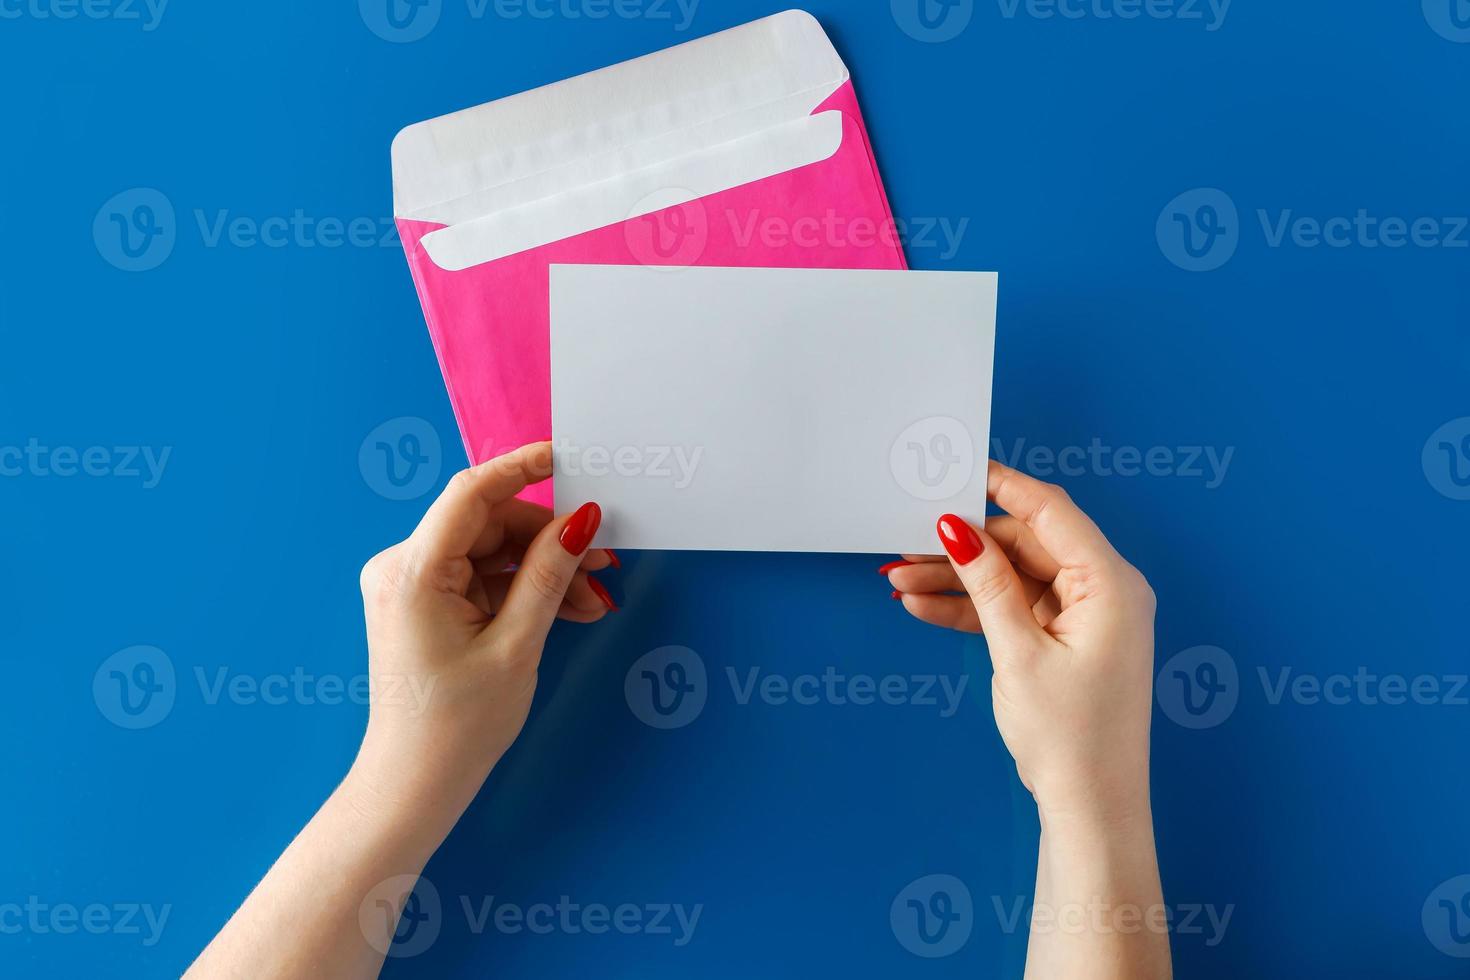 roze envelop met een lege kaart in handen op een blauwe achtergrond foto